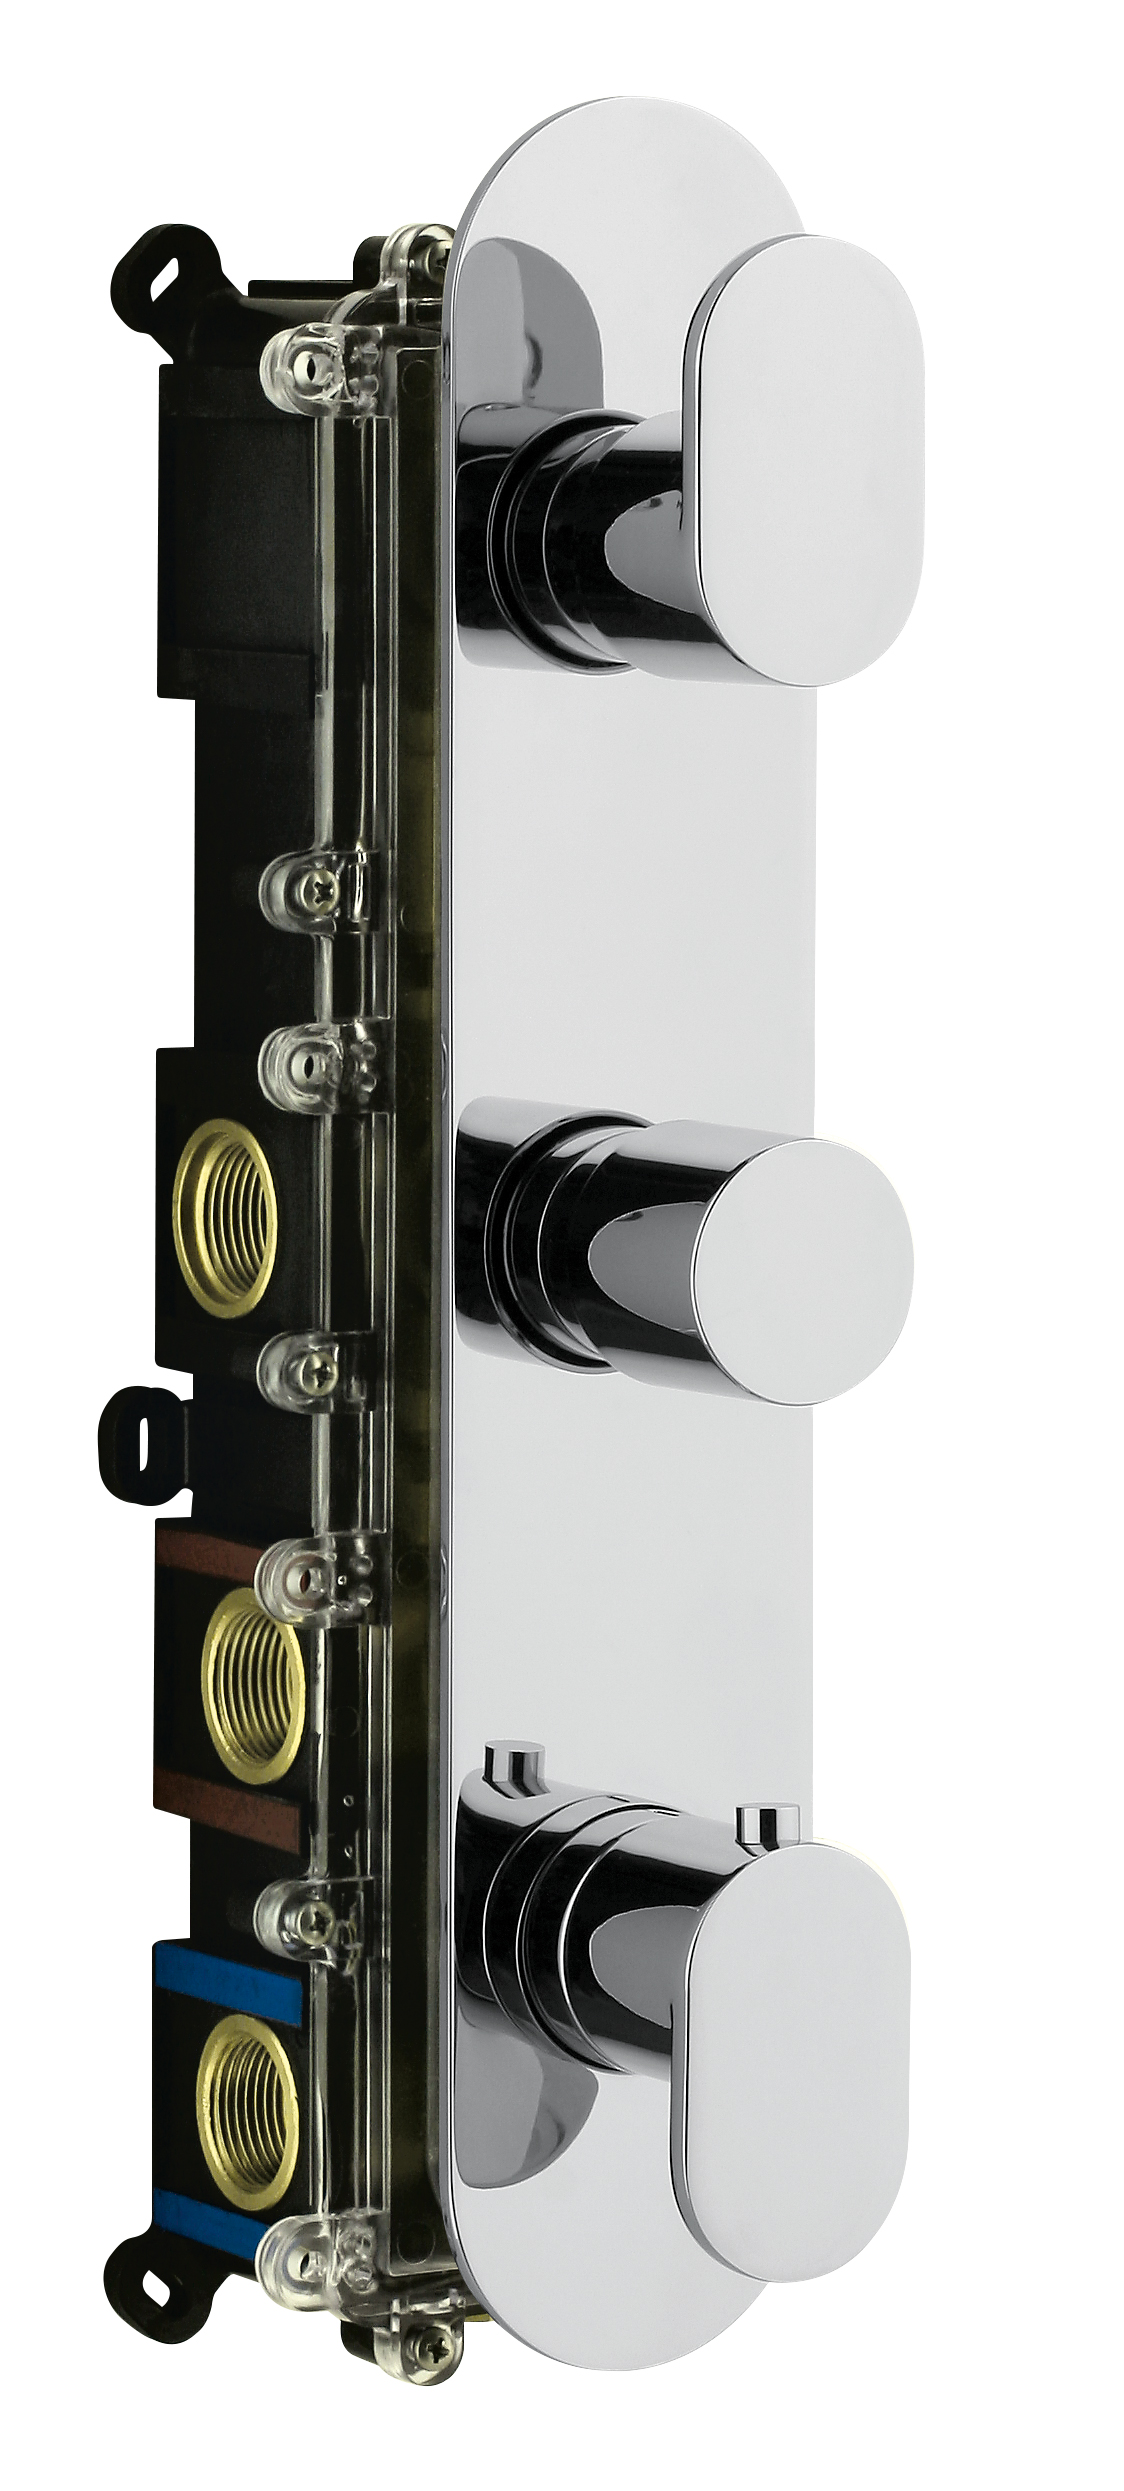 Foto 3 - Miscelatori termostatici OMBG. Dettagli sinuosi per uno stile elegante